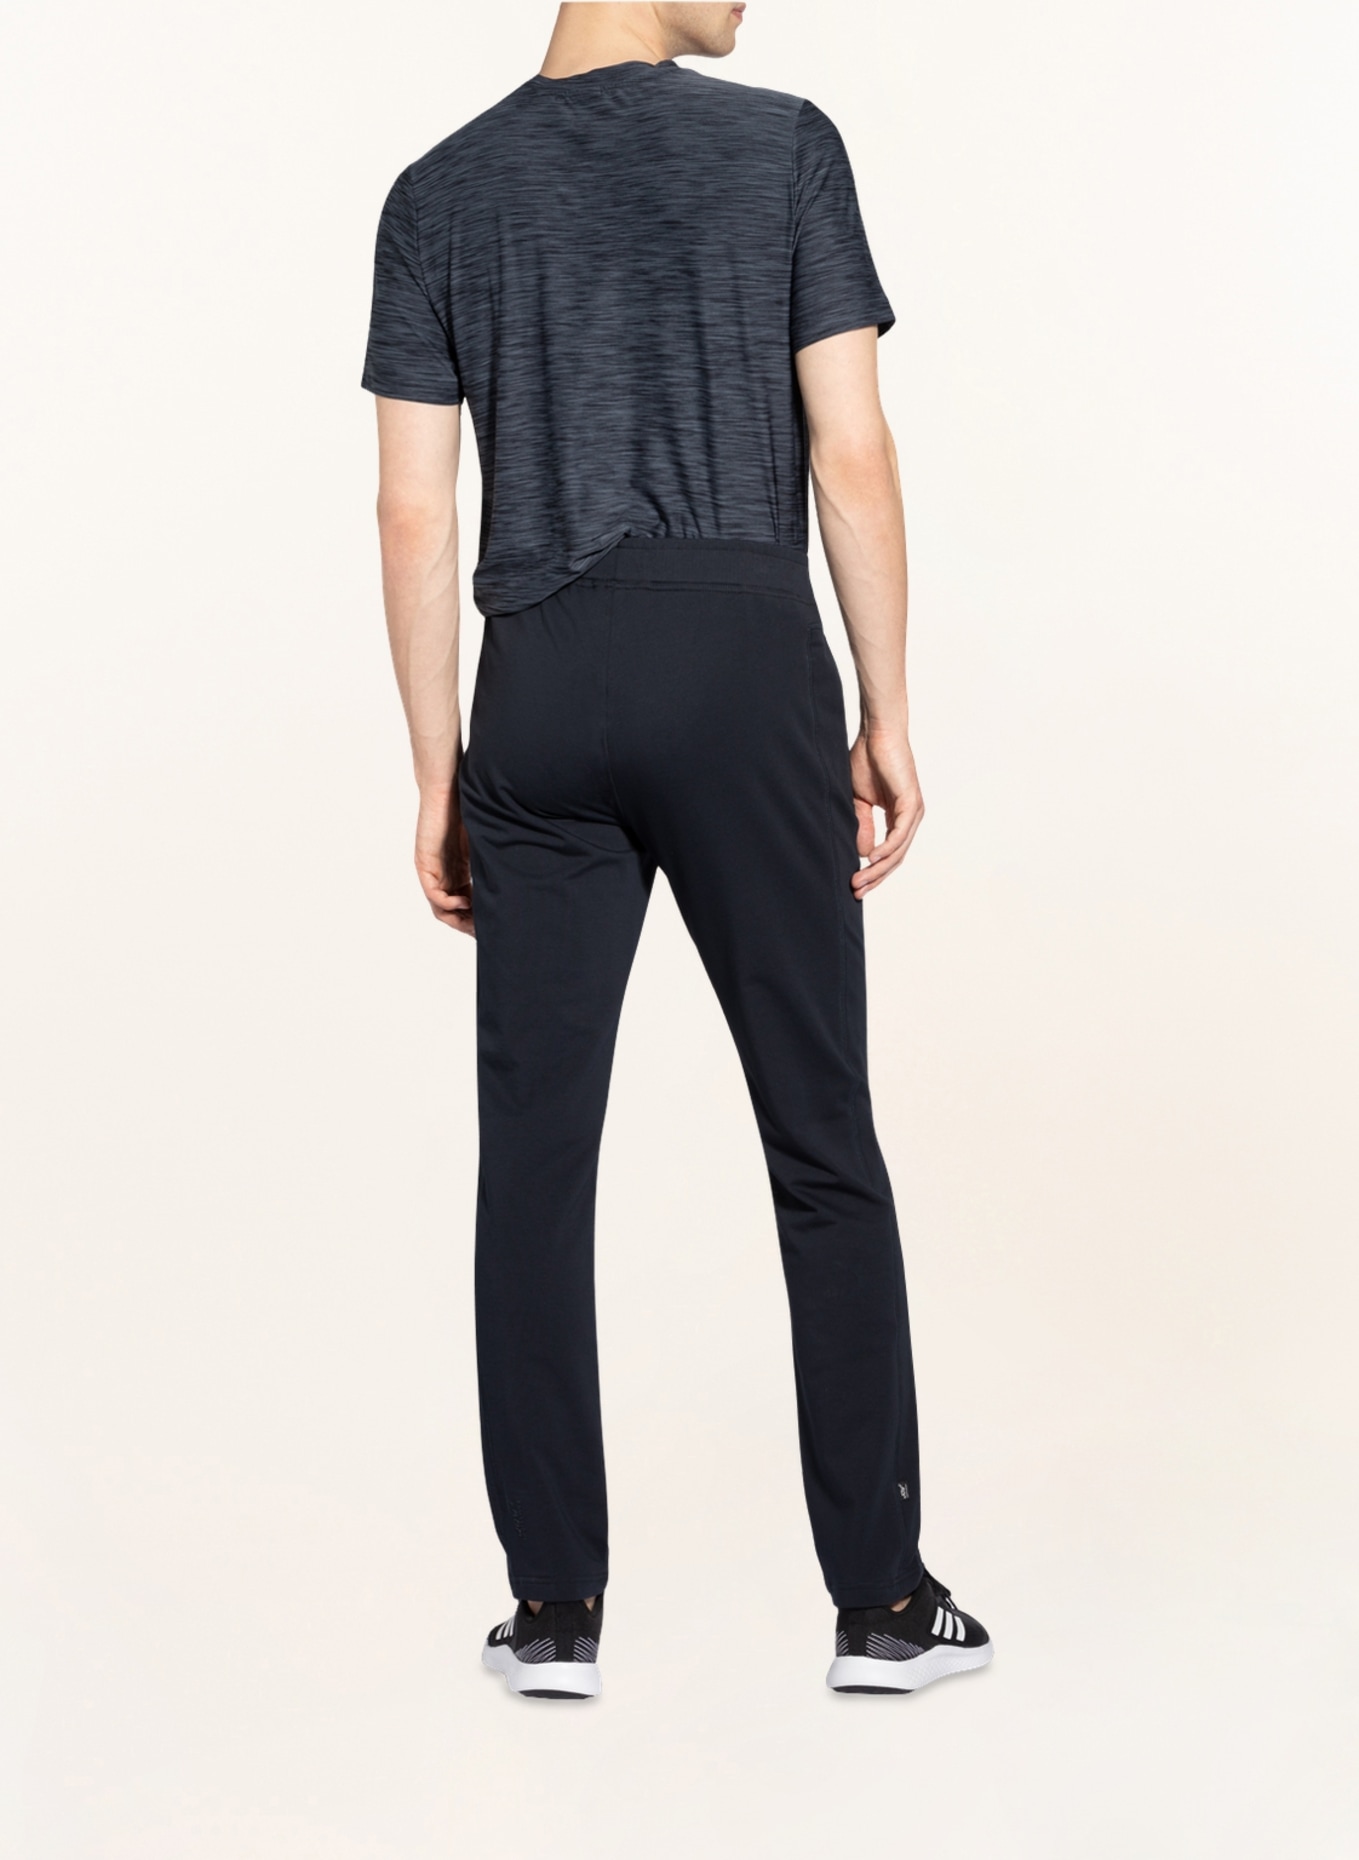 JOY sportswear Sweatpants FERNANDO, Farbe: DUNKELBLAU (Bild 3)